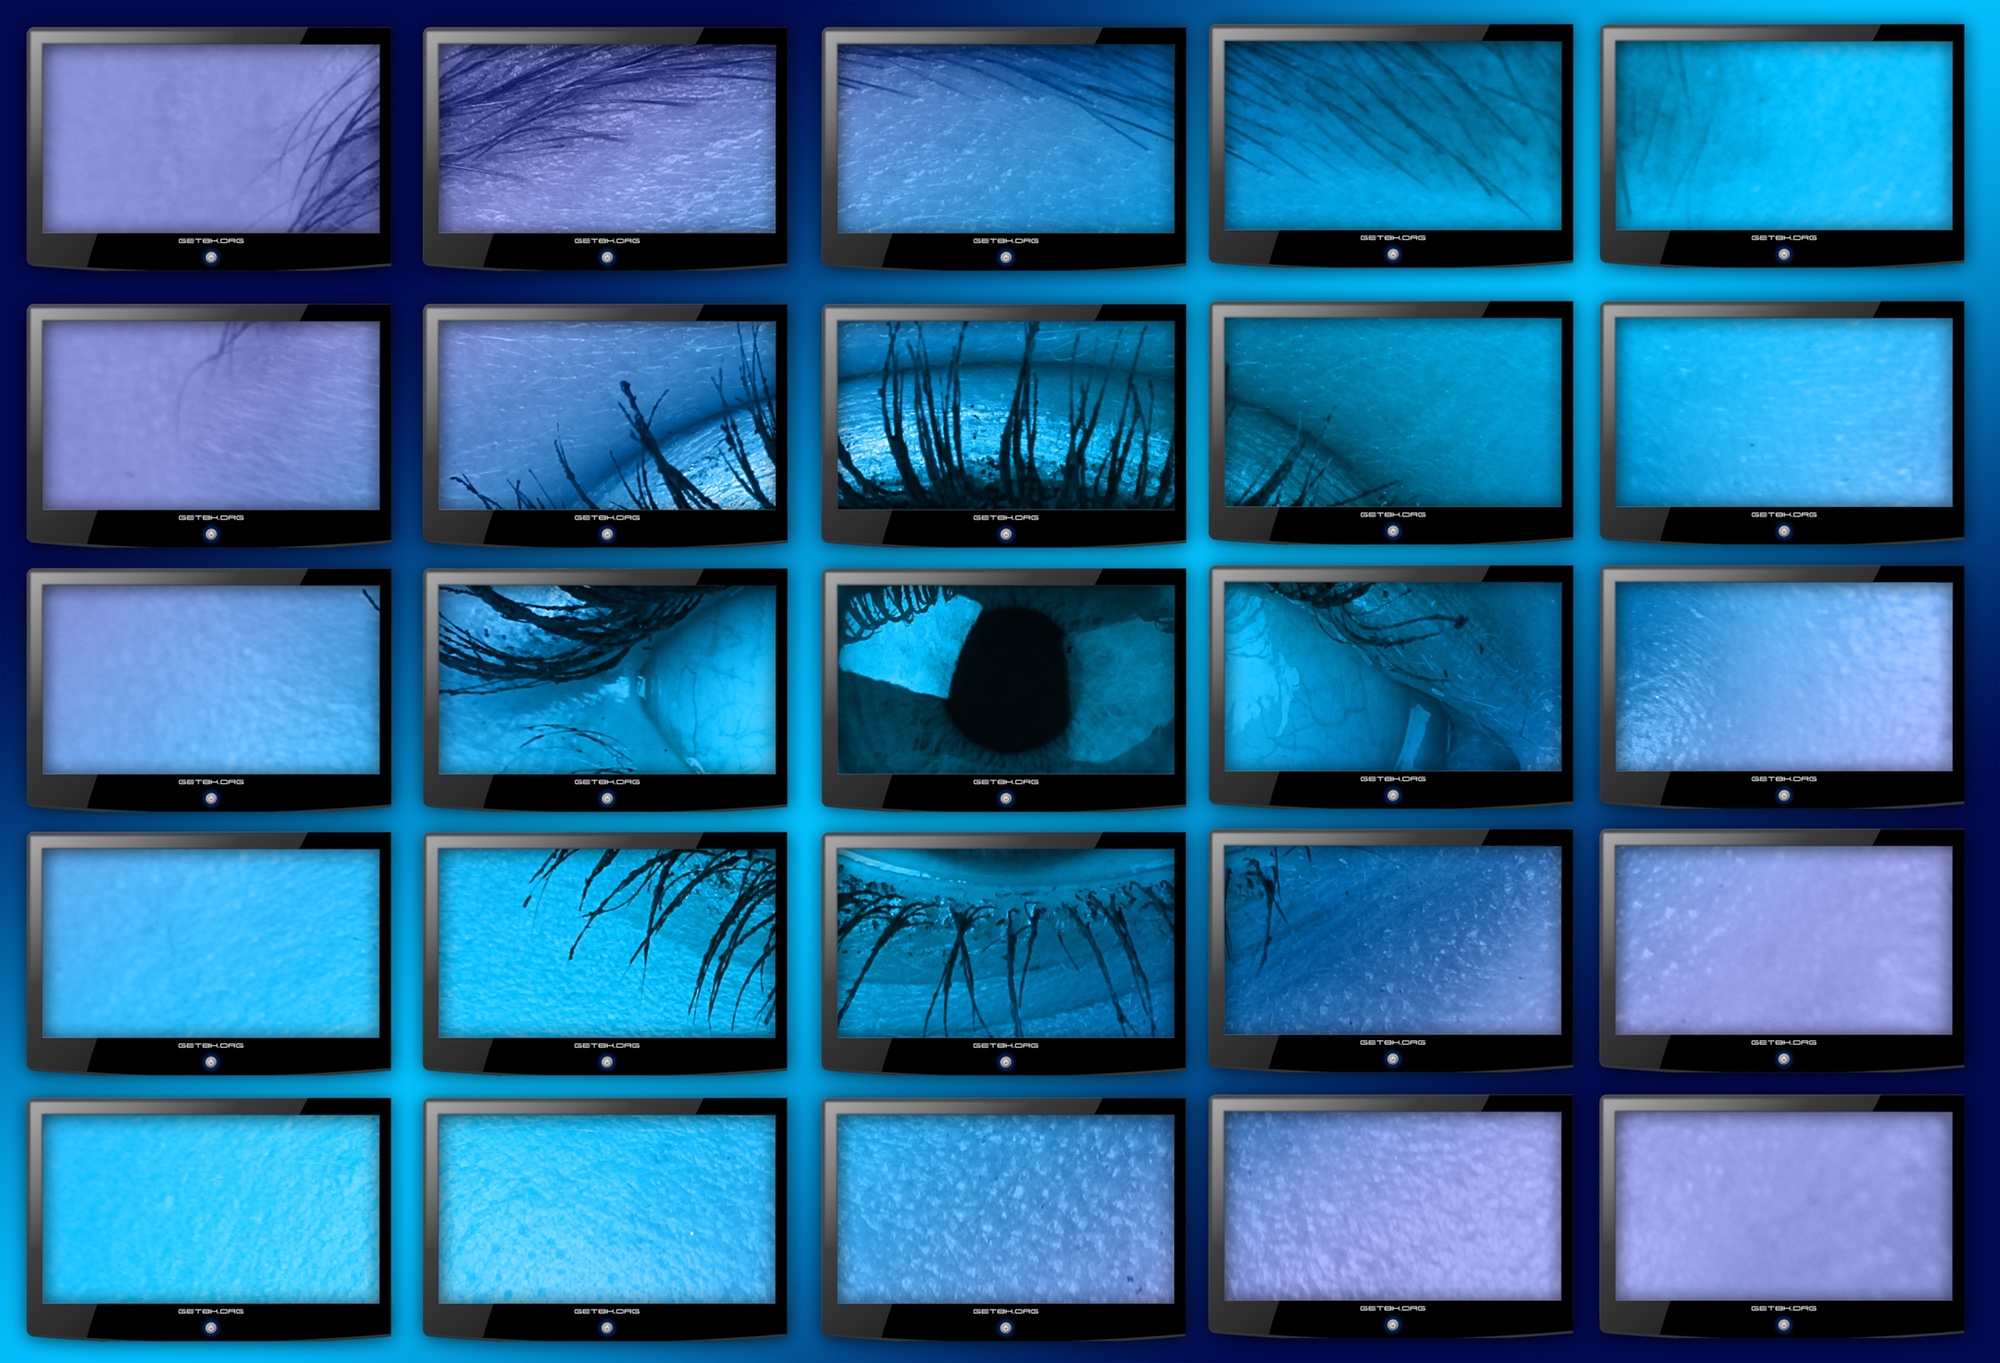 Bild: 25 Bildschirme (5 × 5), die im Gesamtbild ein Auge zeigen